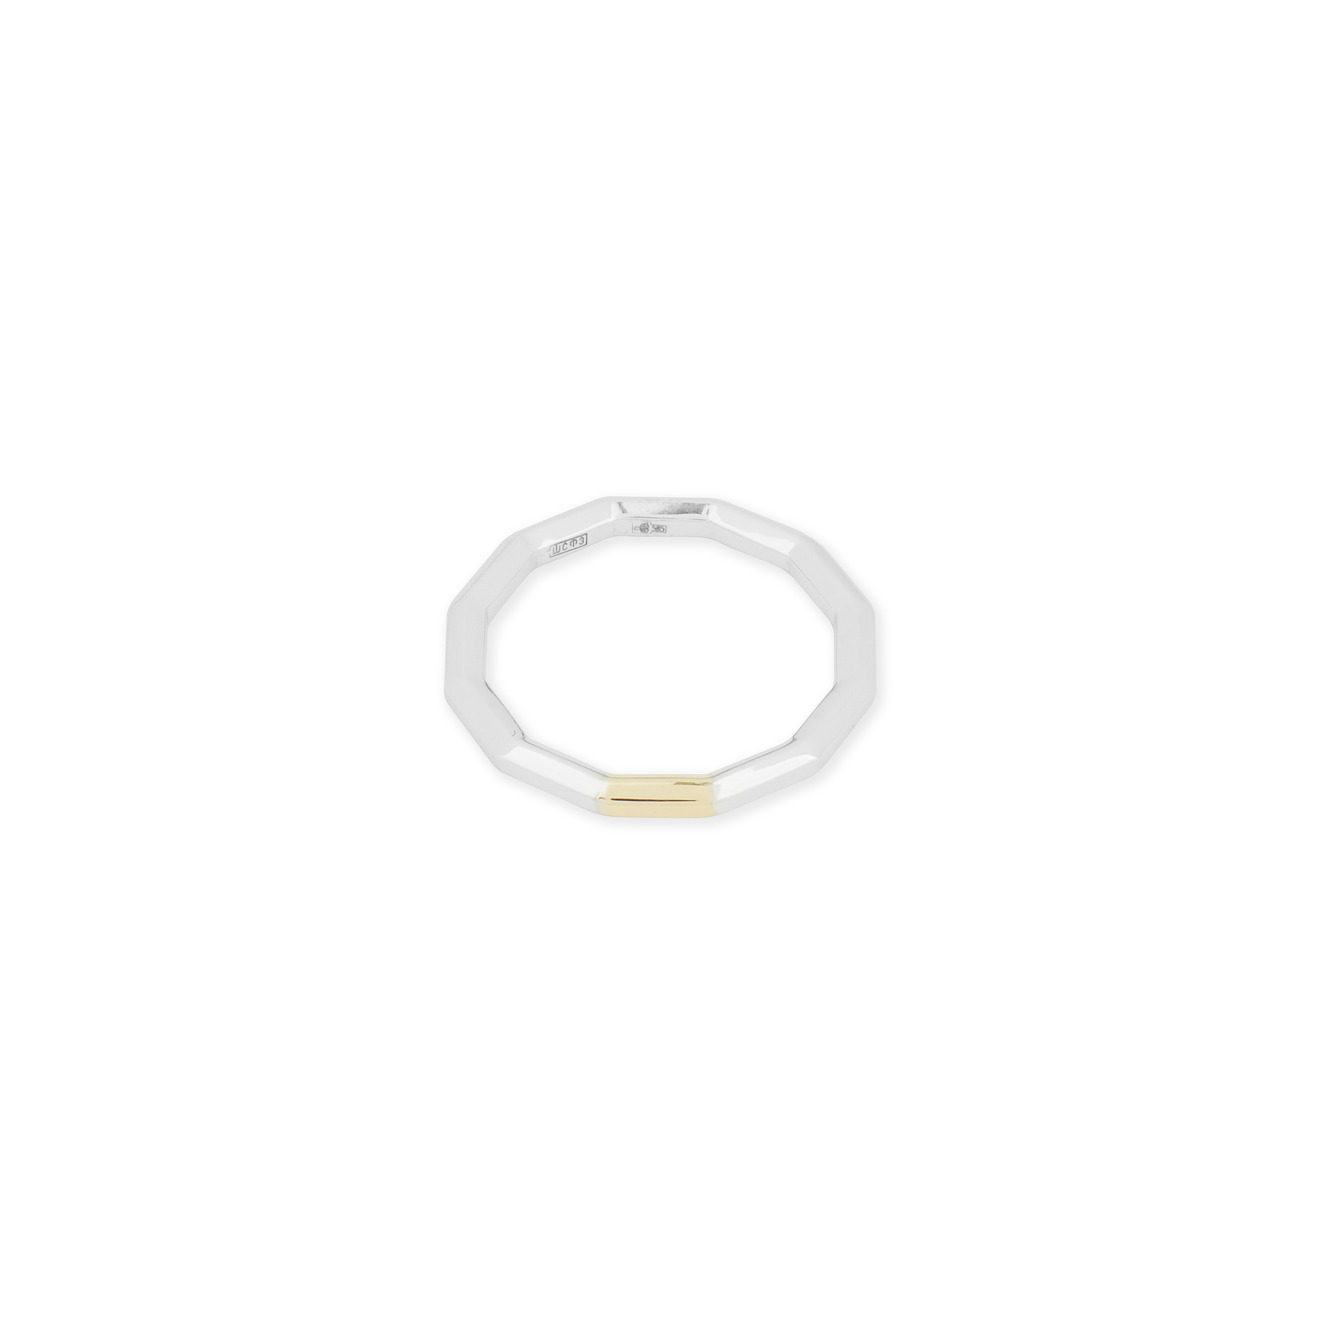 Avgvst Обручальное кольцо из золота Double Gold с сегментом из лимонного золота avgvst кольцо 1 2 с белой эмалью из белого золота